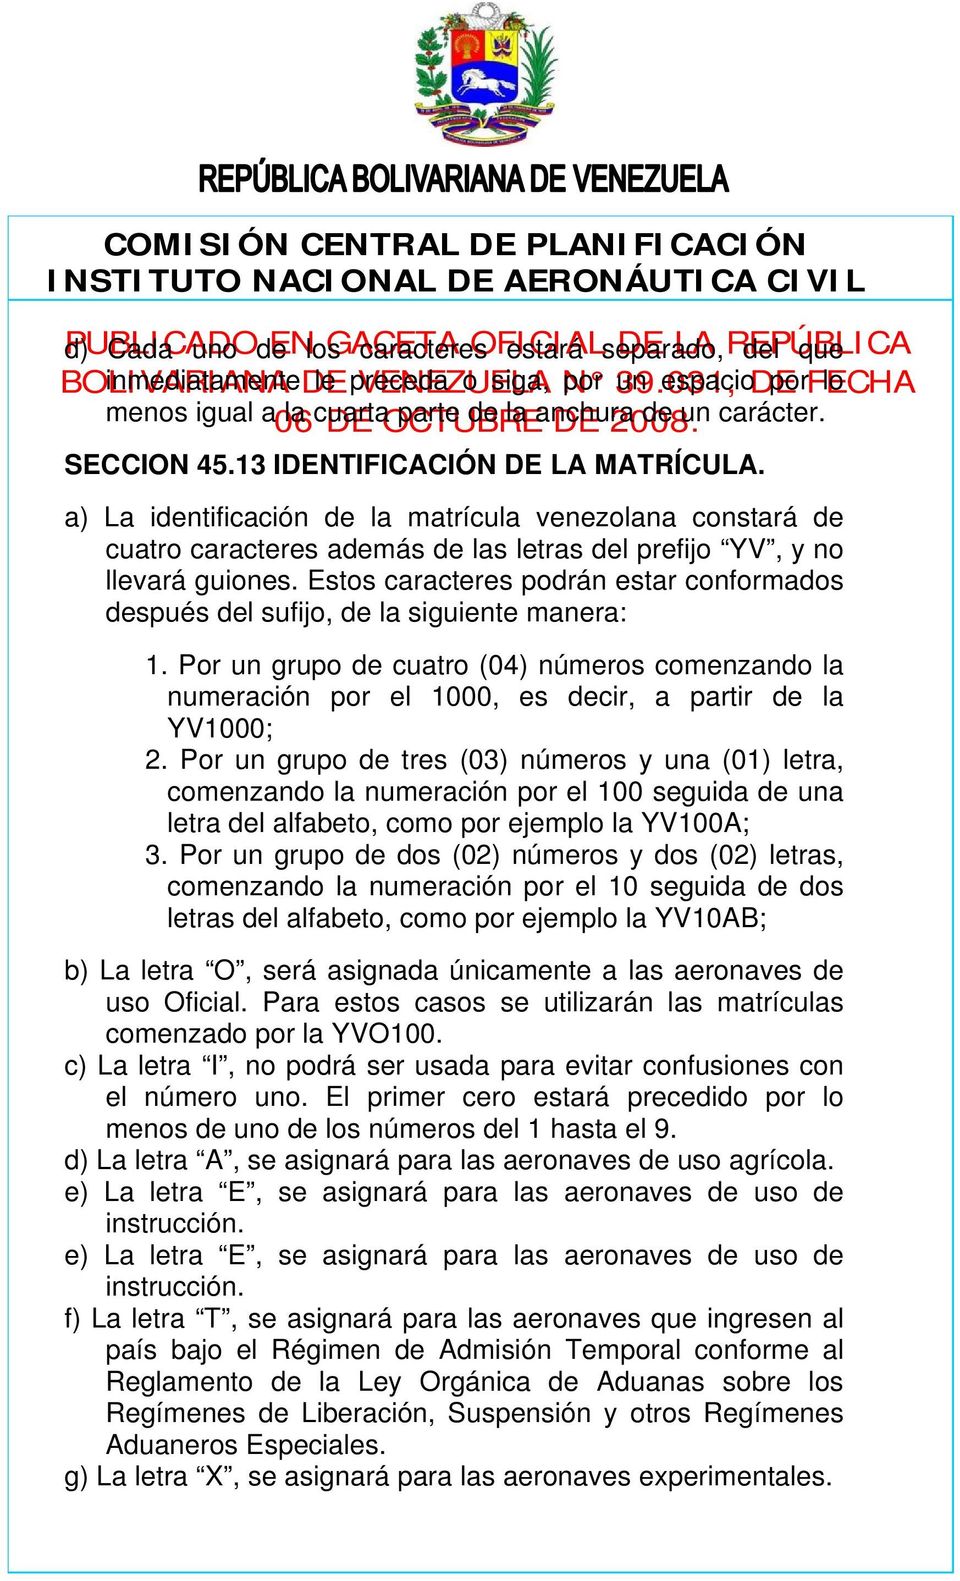 a) La identificación de la matrícula venezolana constará de cuatro caracteres además de las letras del prefijo YV, y no llevará guiones.